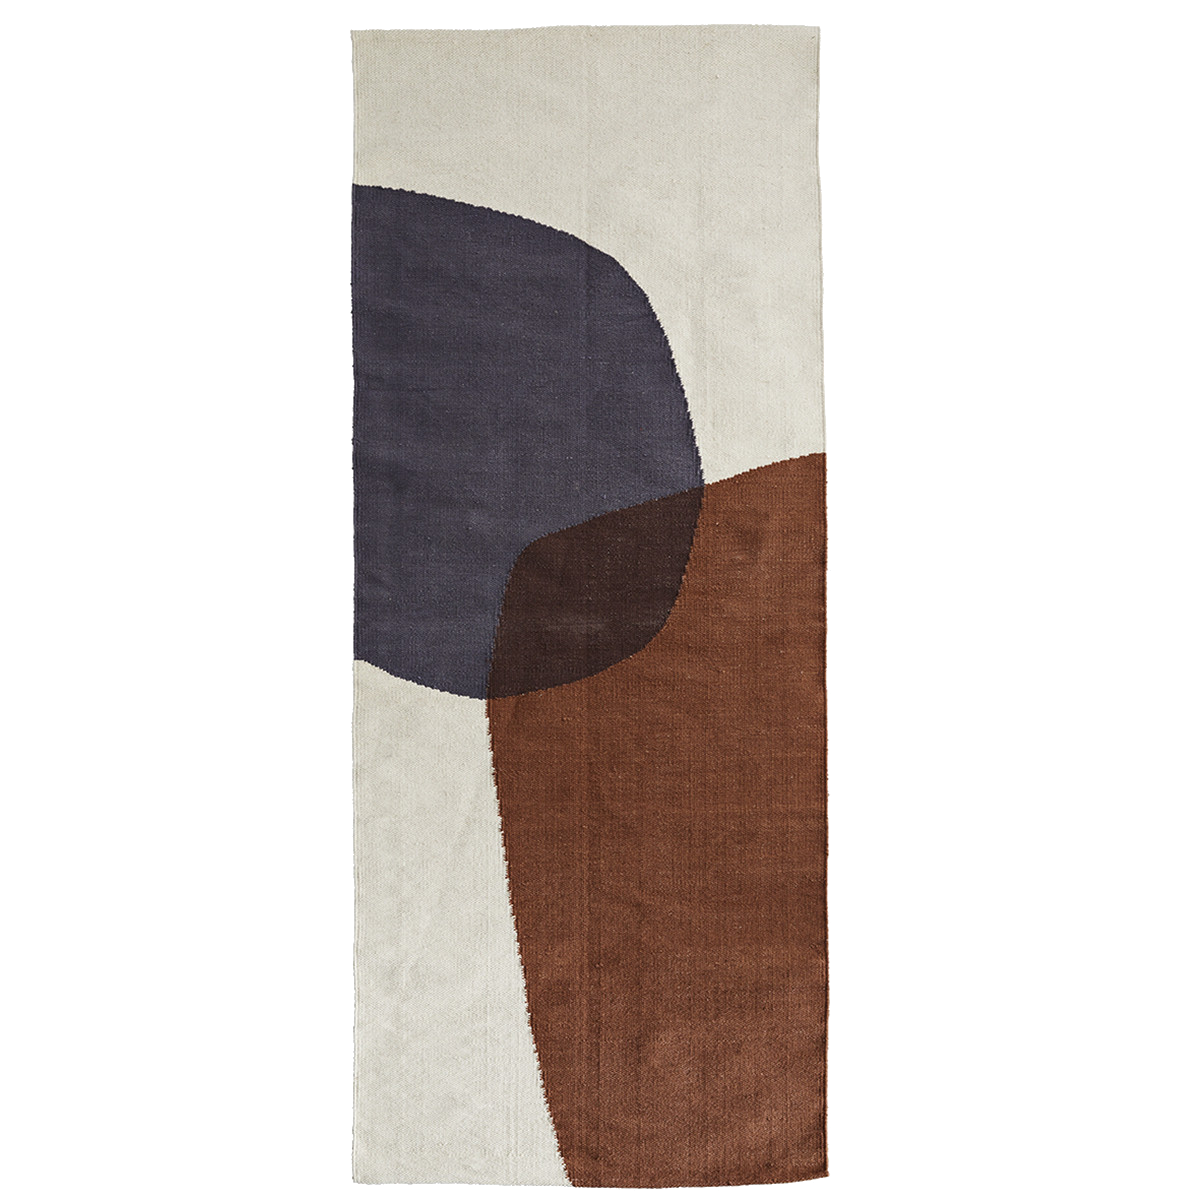 Vue des couleur du tapis : marron, gris foncé, beige